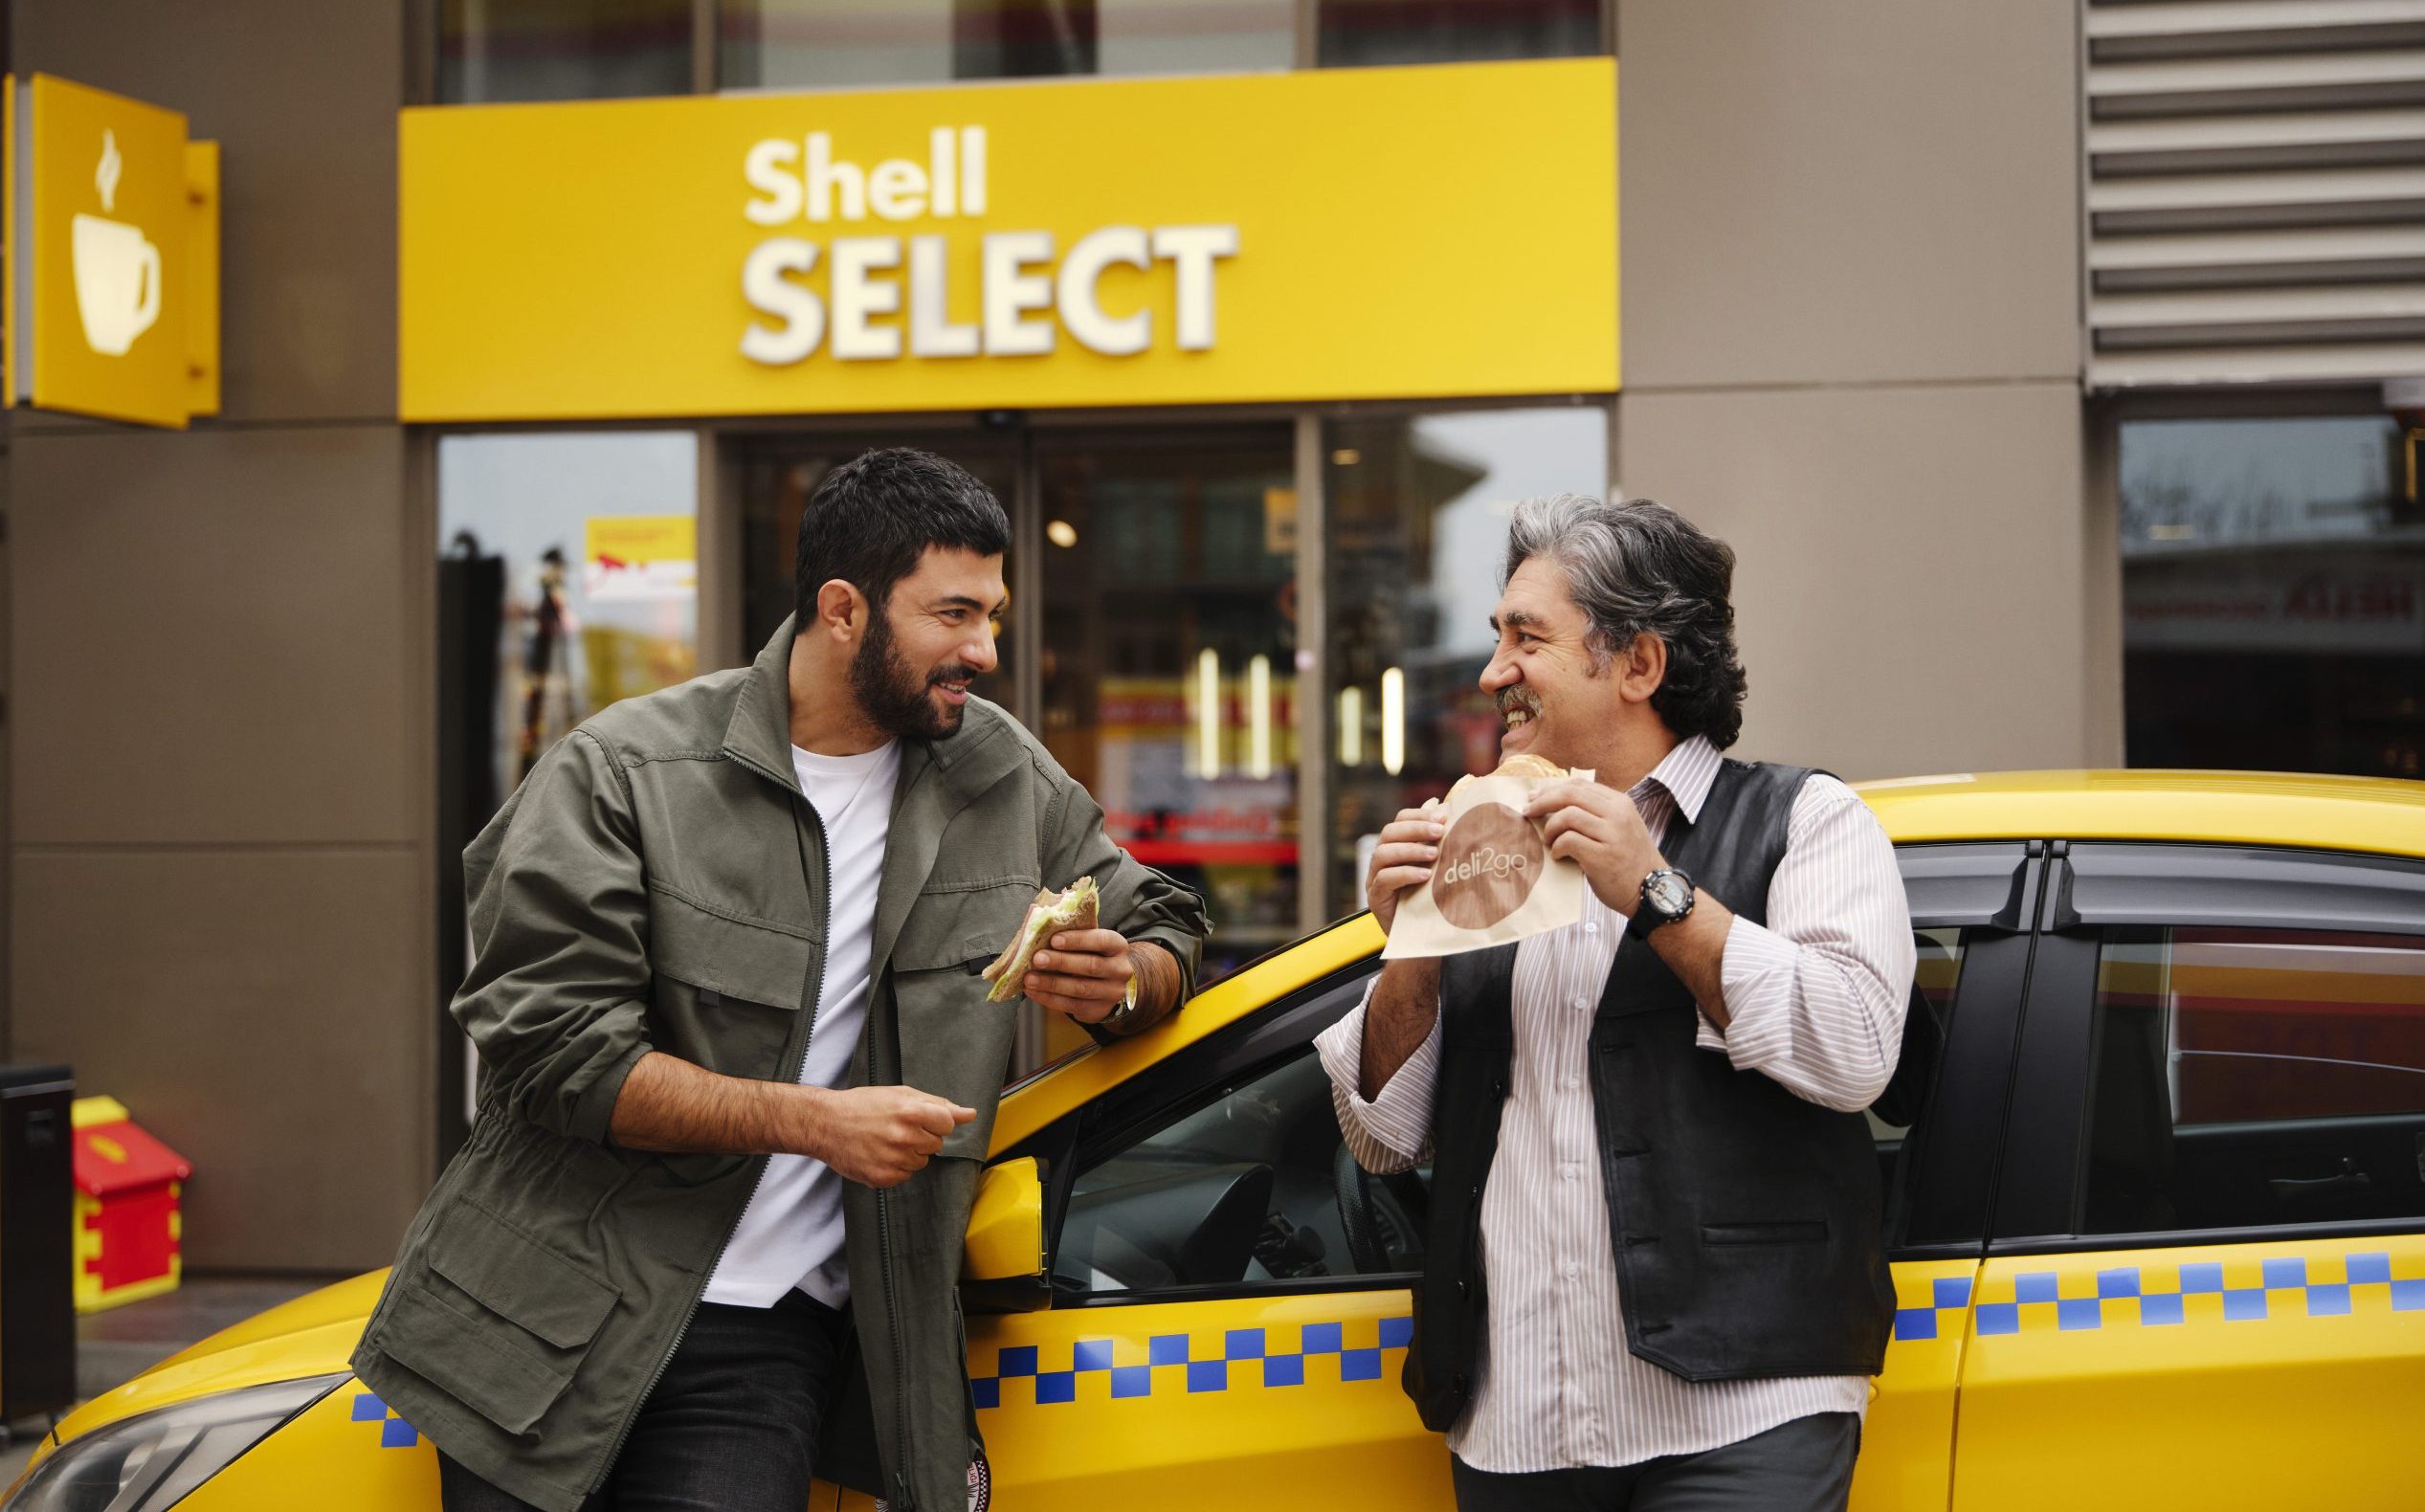 Shell & Turcas, “Shell Hep İleride”yi duyurdu